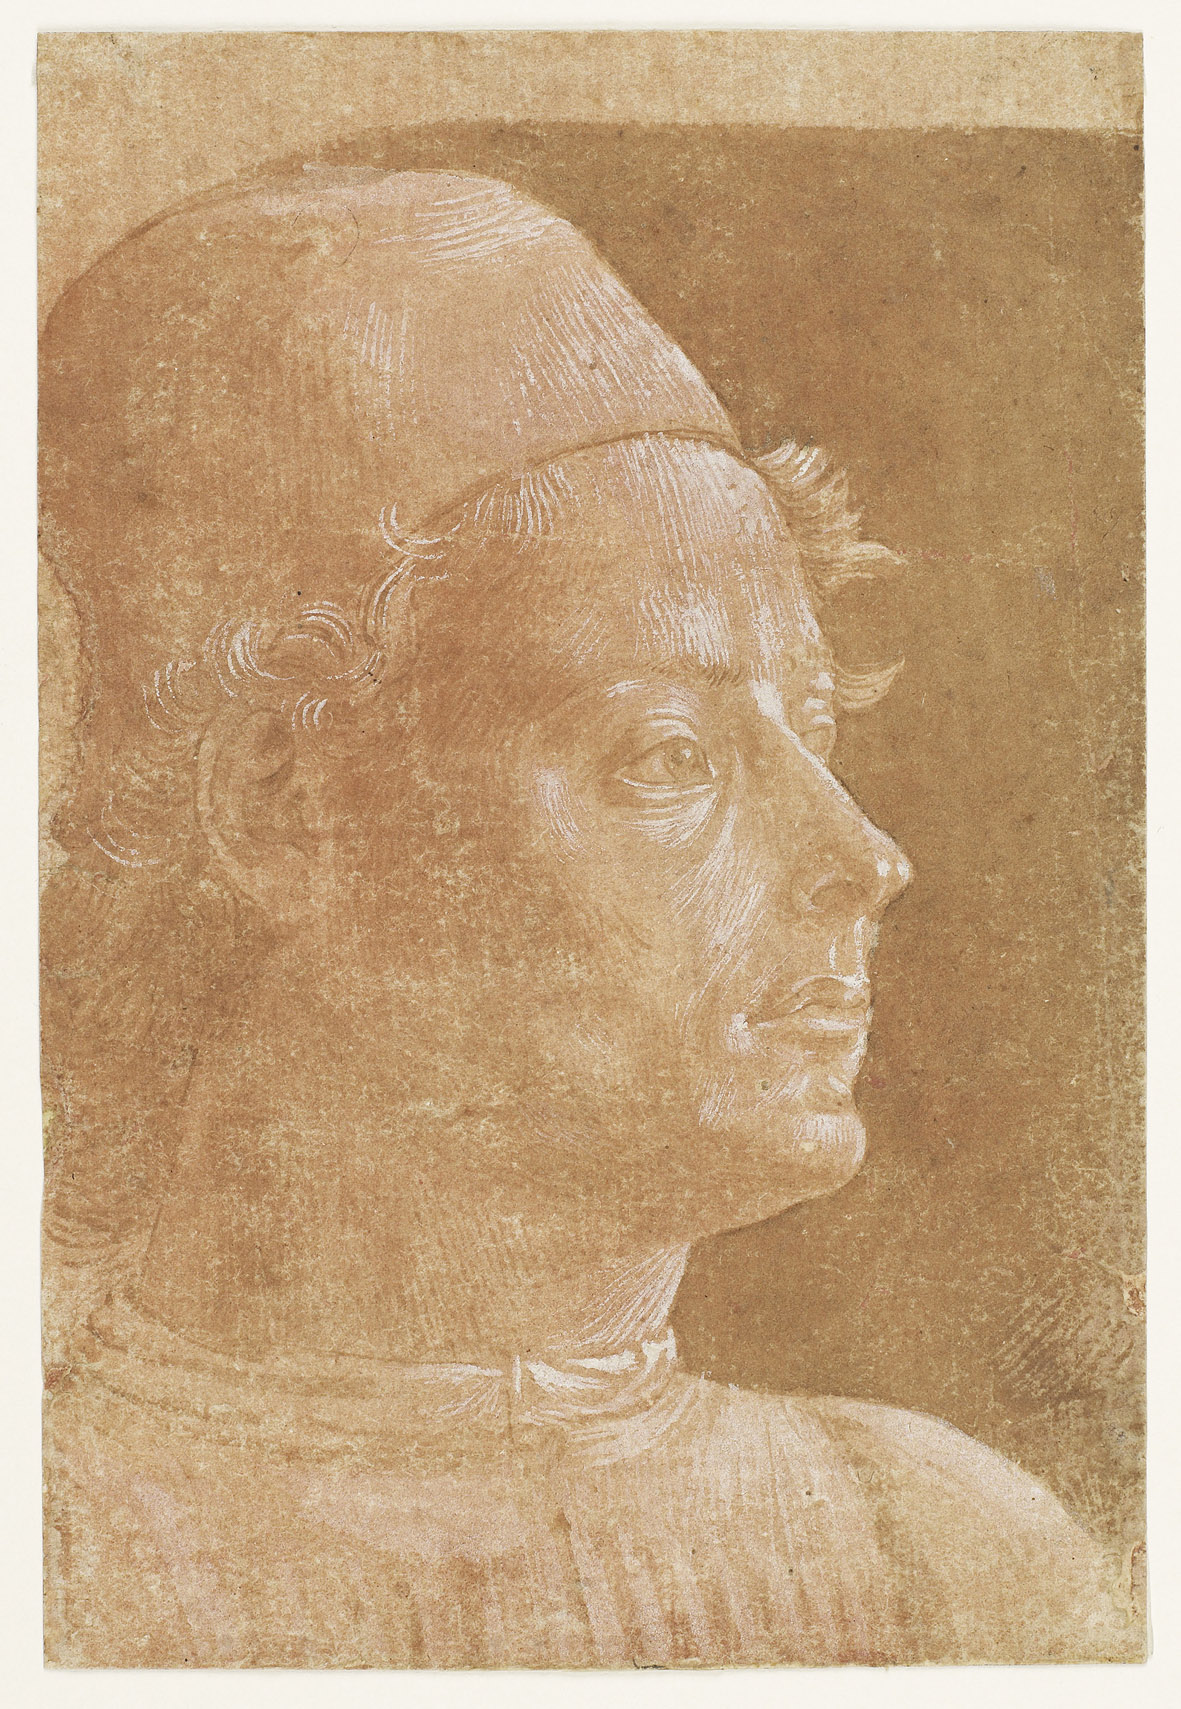 Benozzo Gozzoli_Ritratto di uomo con berretto__XV secolo_Parigi_Musée du Louvre_Département des arts graphiques_inv. 772DR r